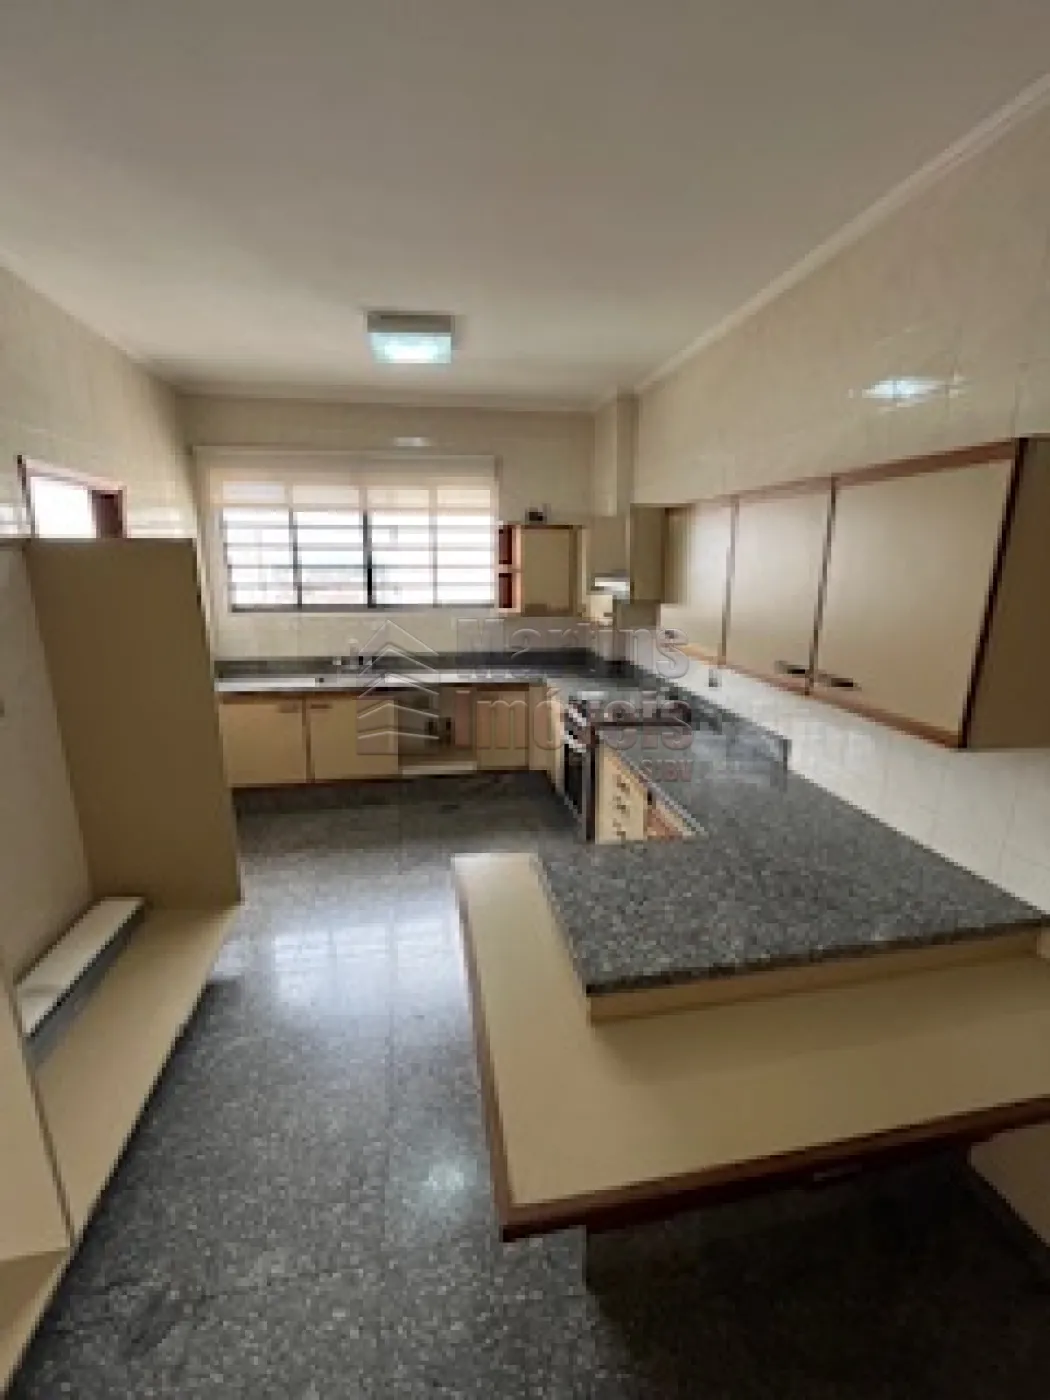 Comprar Apartamento / Padrão em São João da Boa Vista R$ 750.000,00 - Foto 16